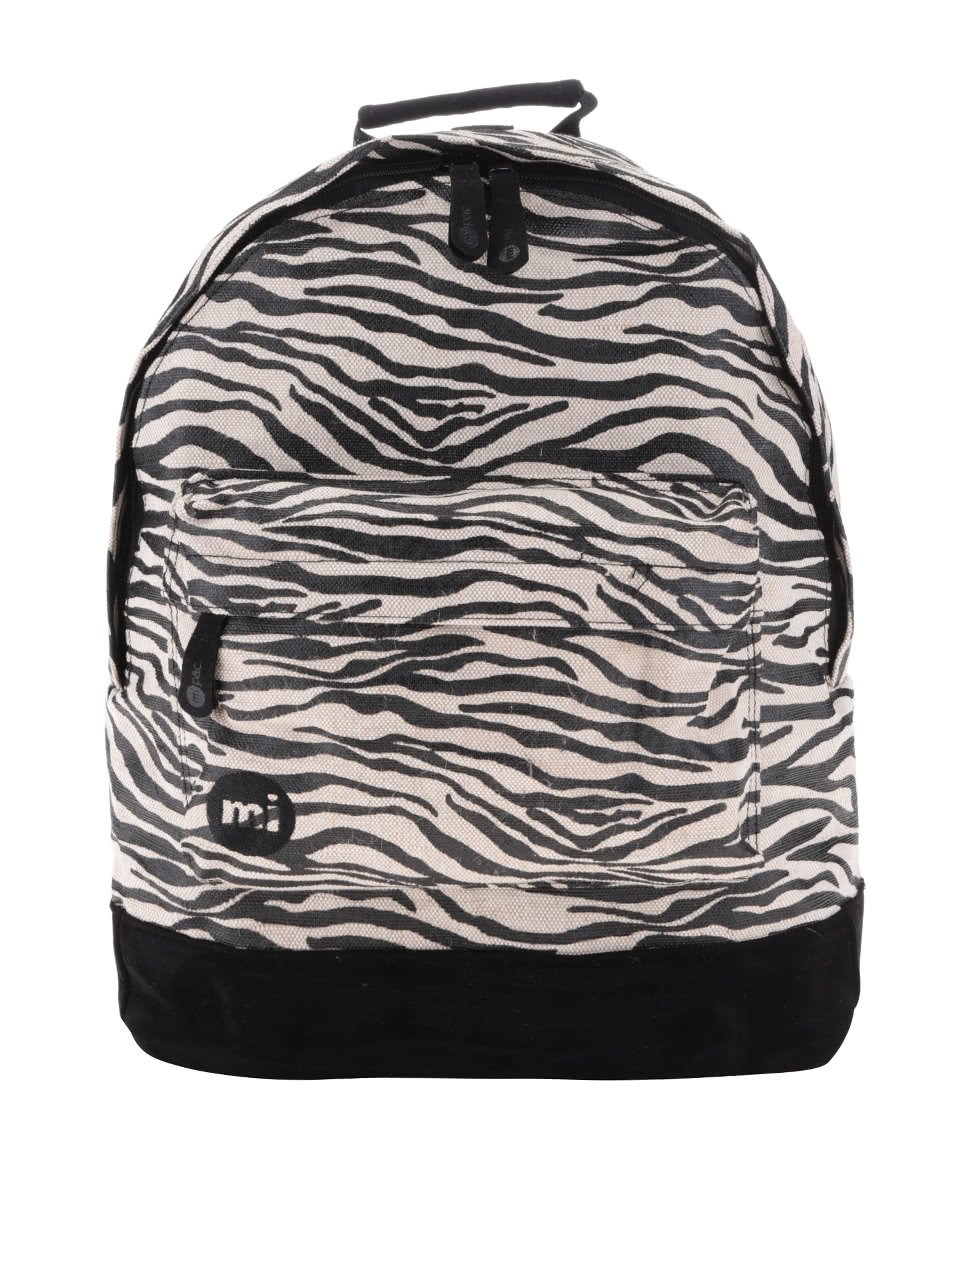 Béžovo-černý dámský vzorovaný batoh Mi-Pac Canvas Zebra 17 l